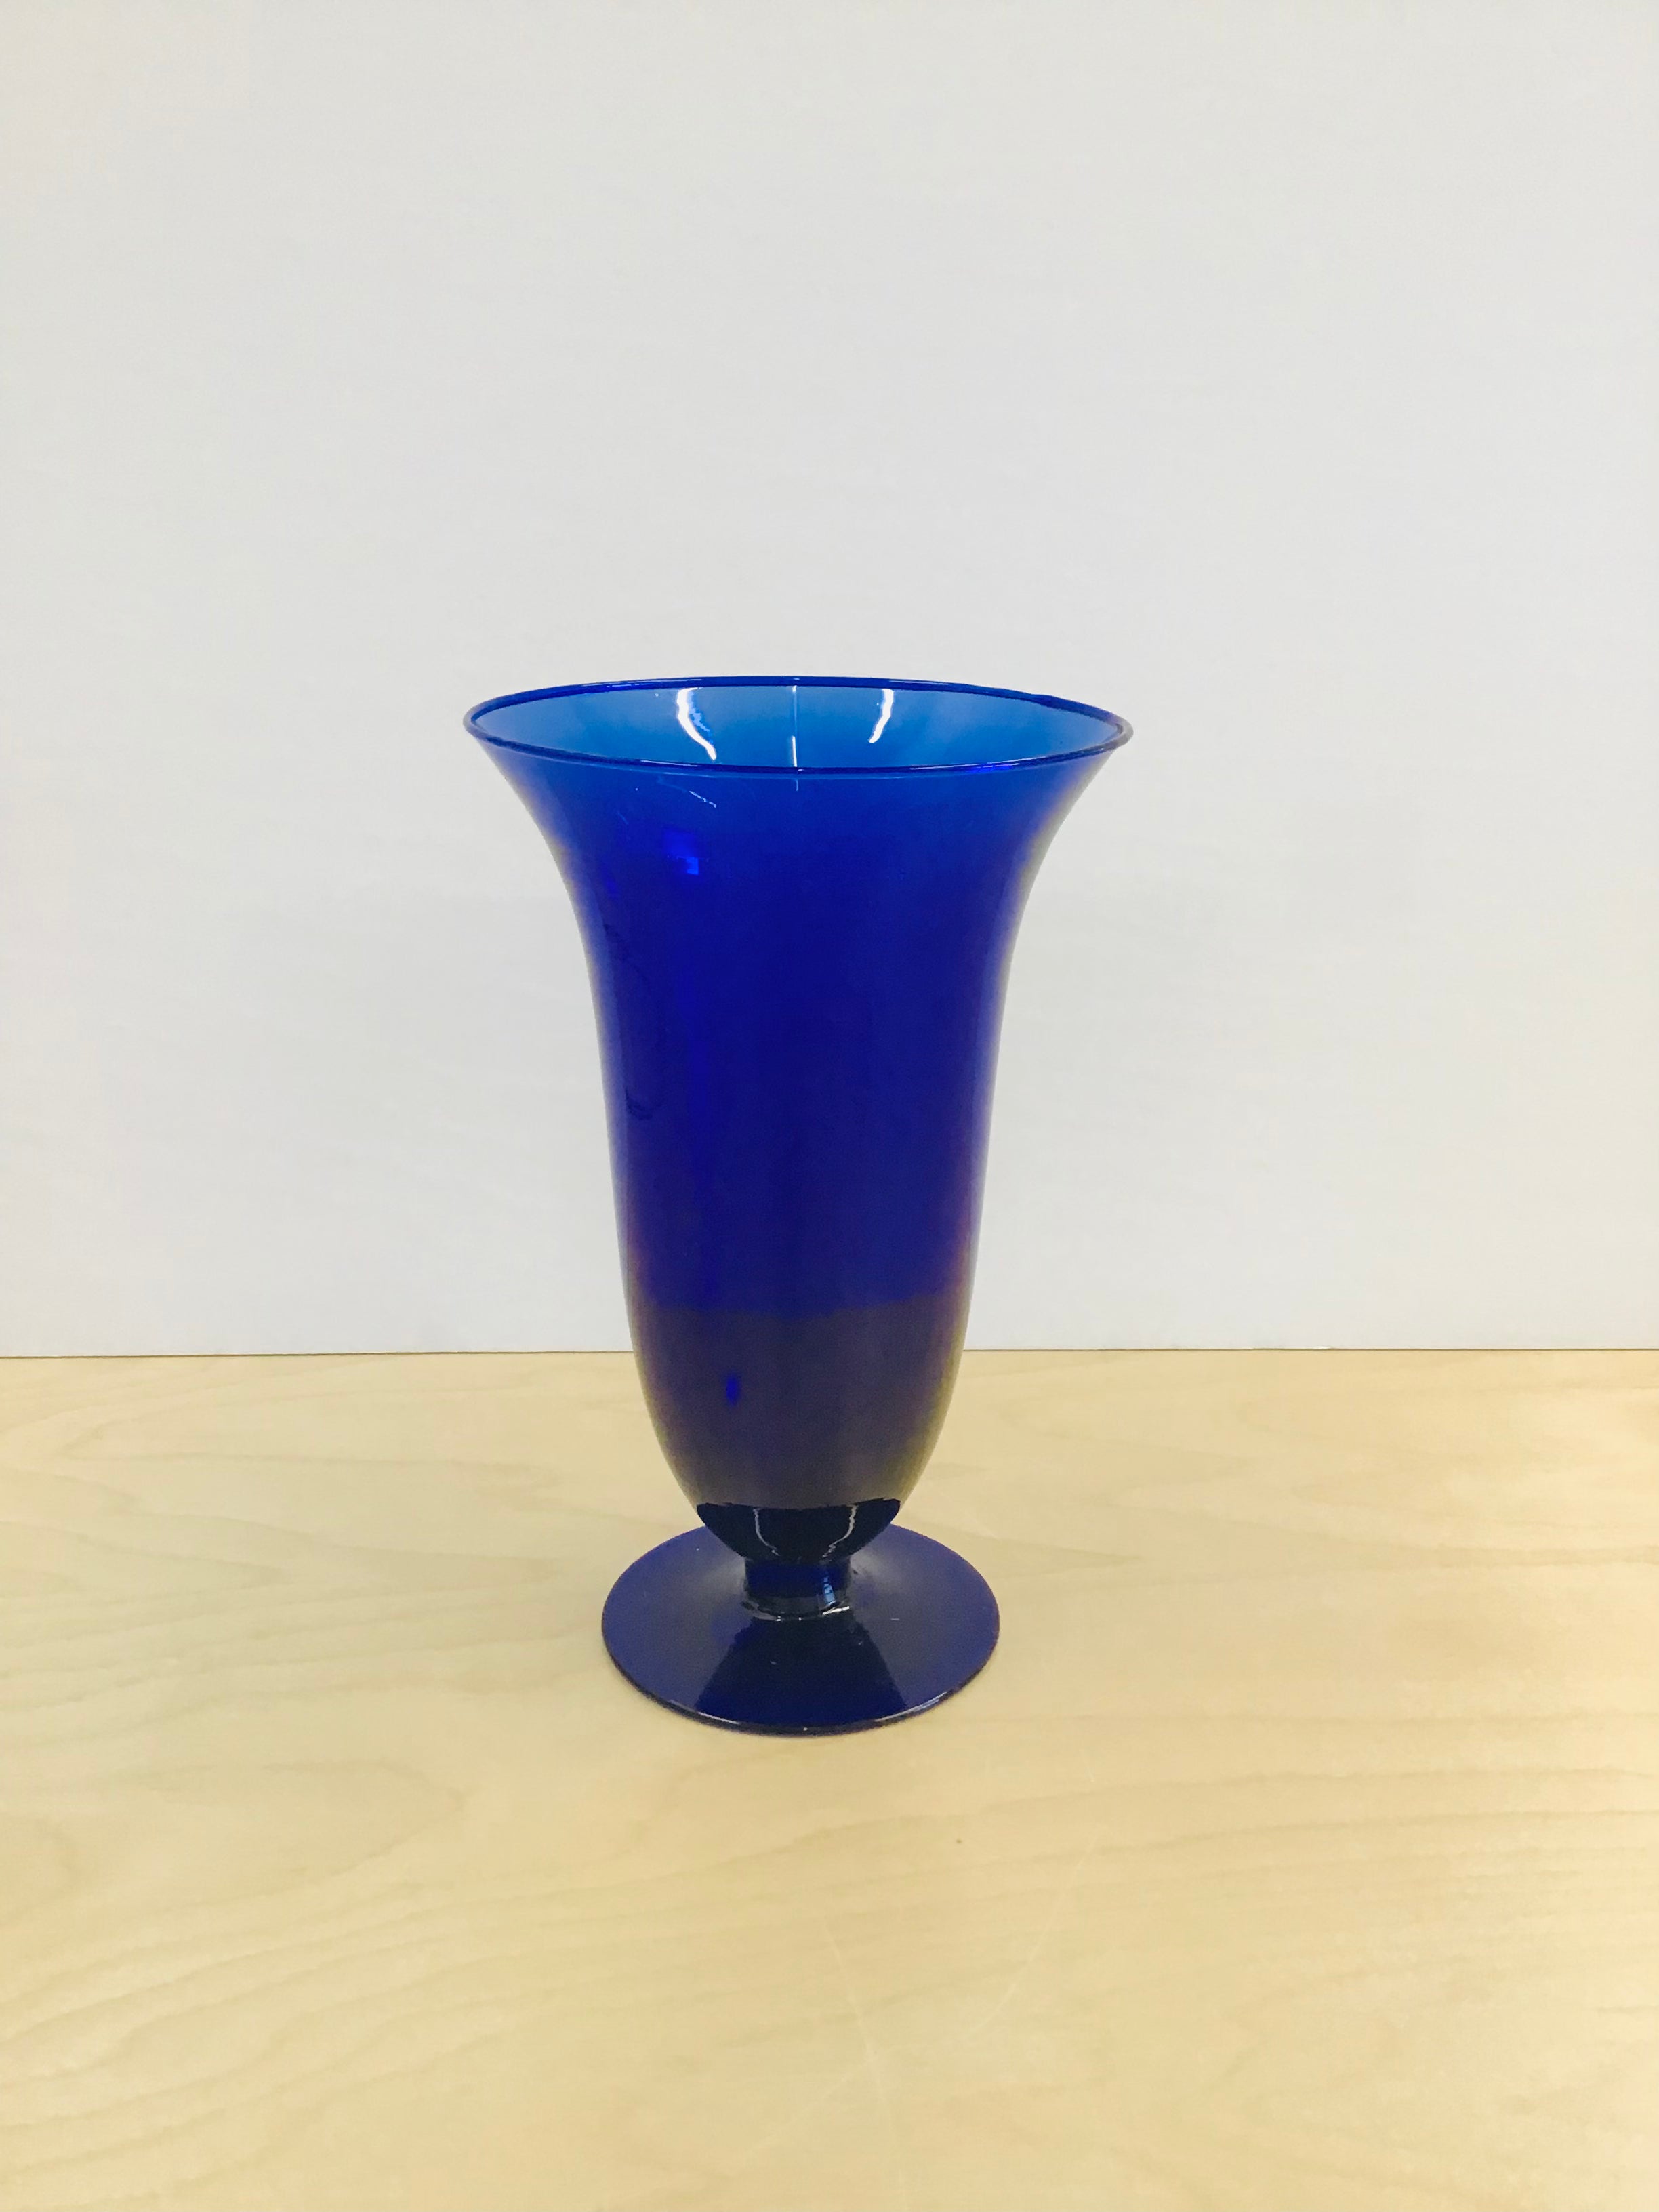 Large vintage blue vase